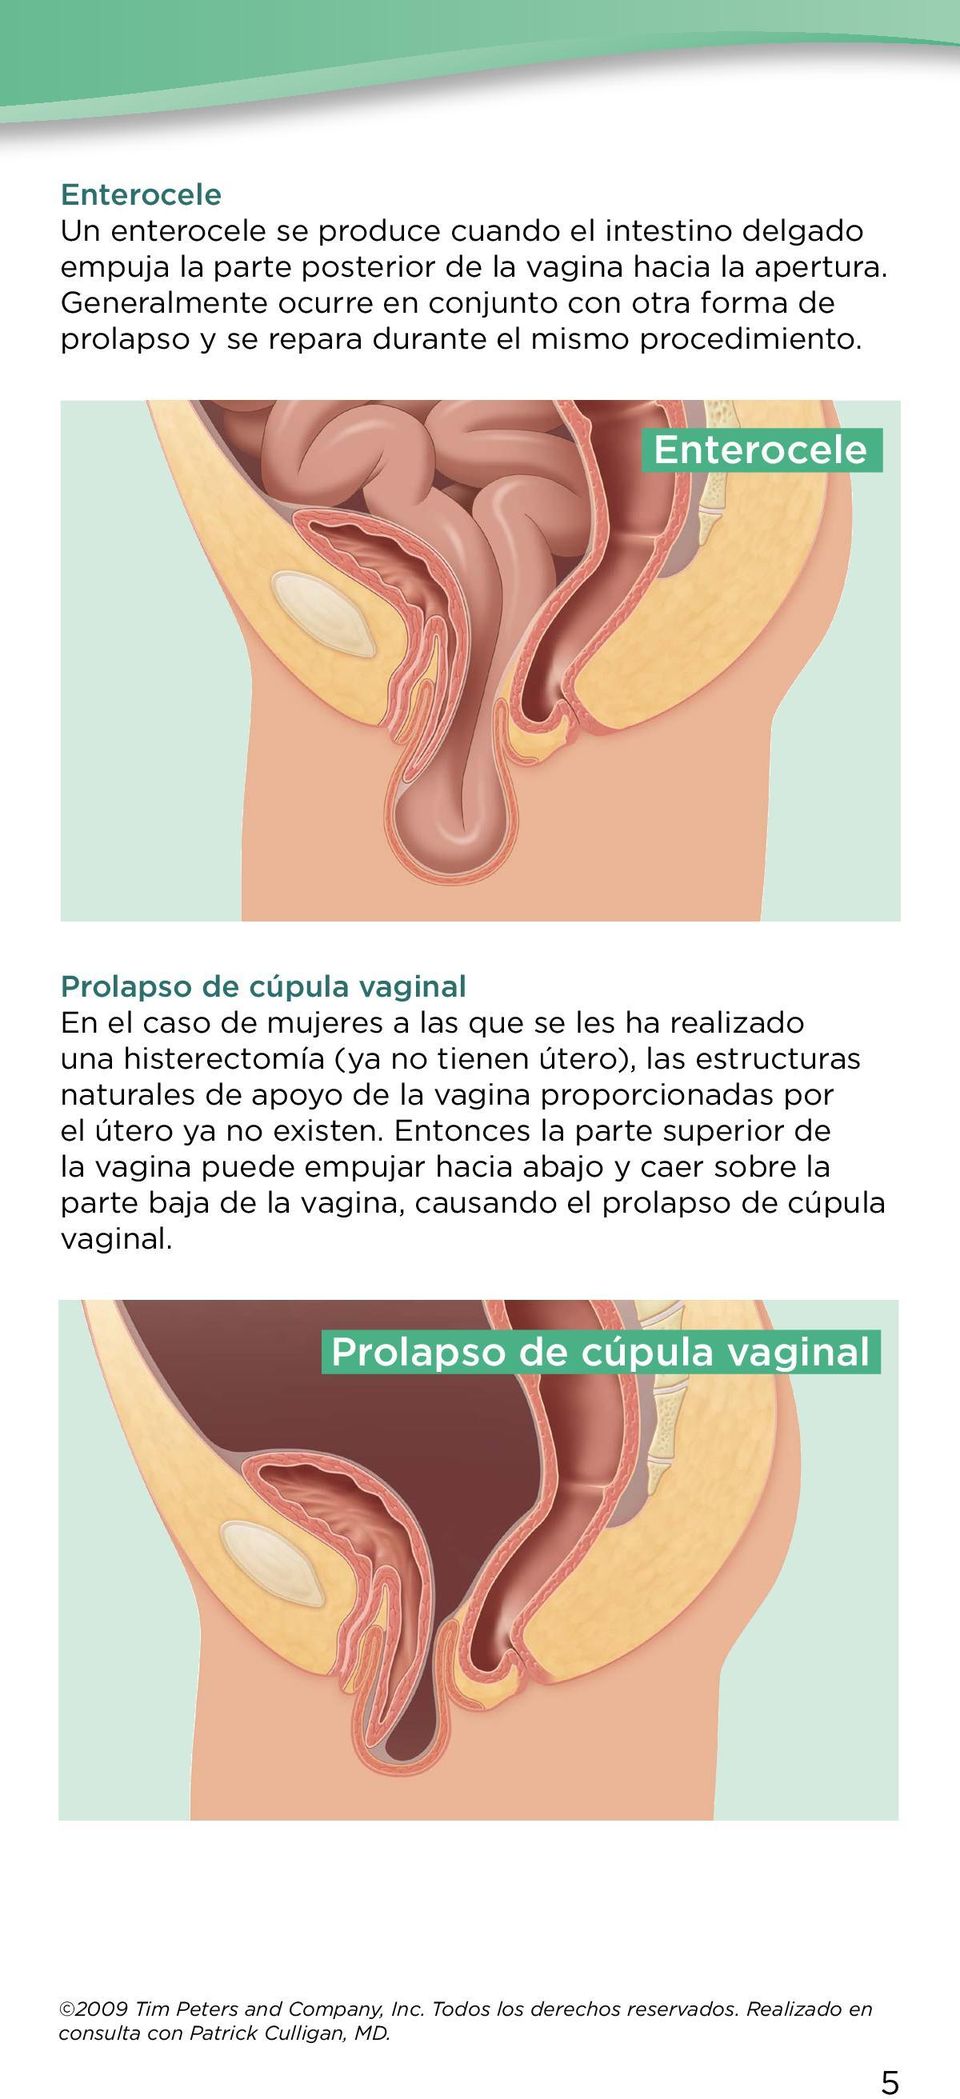 Enterocele Prolapso de cúpula vaginal En el caso de mujeres a las que se les ha realizado una histerectomía (ya no tienen útero), las estructuras naturales de apoyo de la vagina